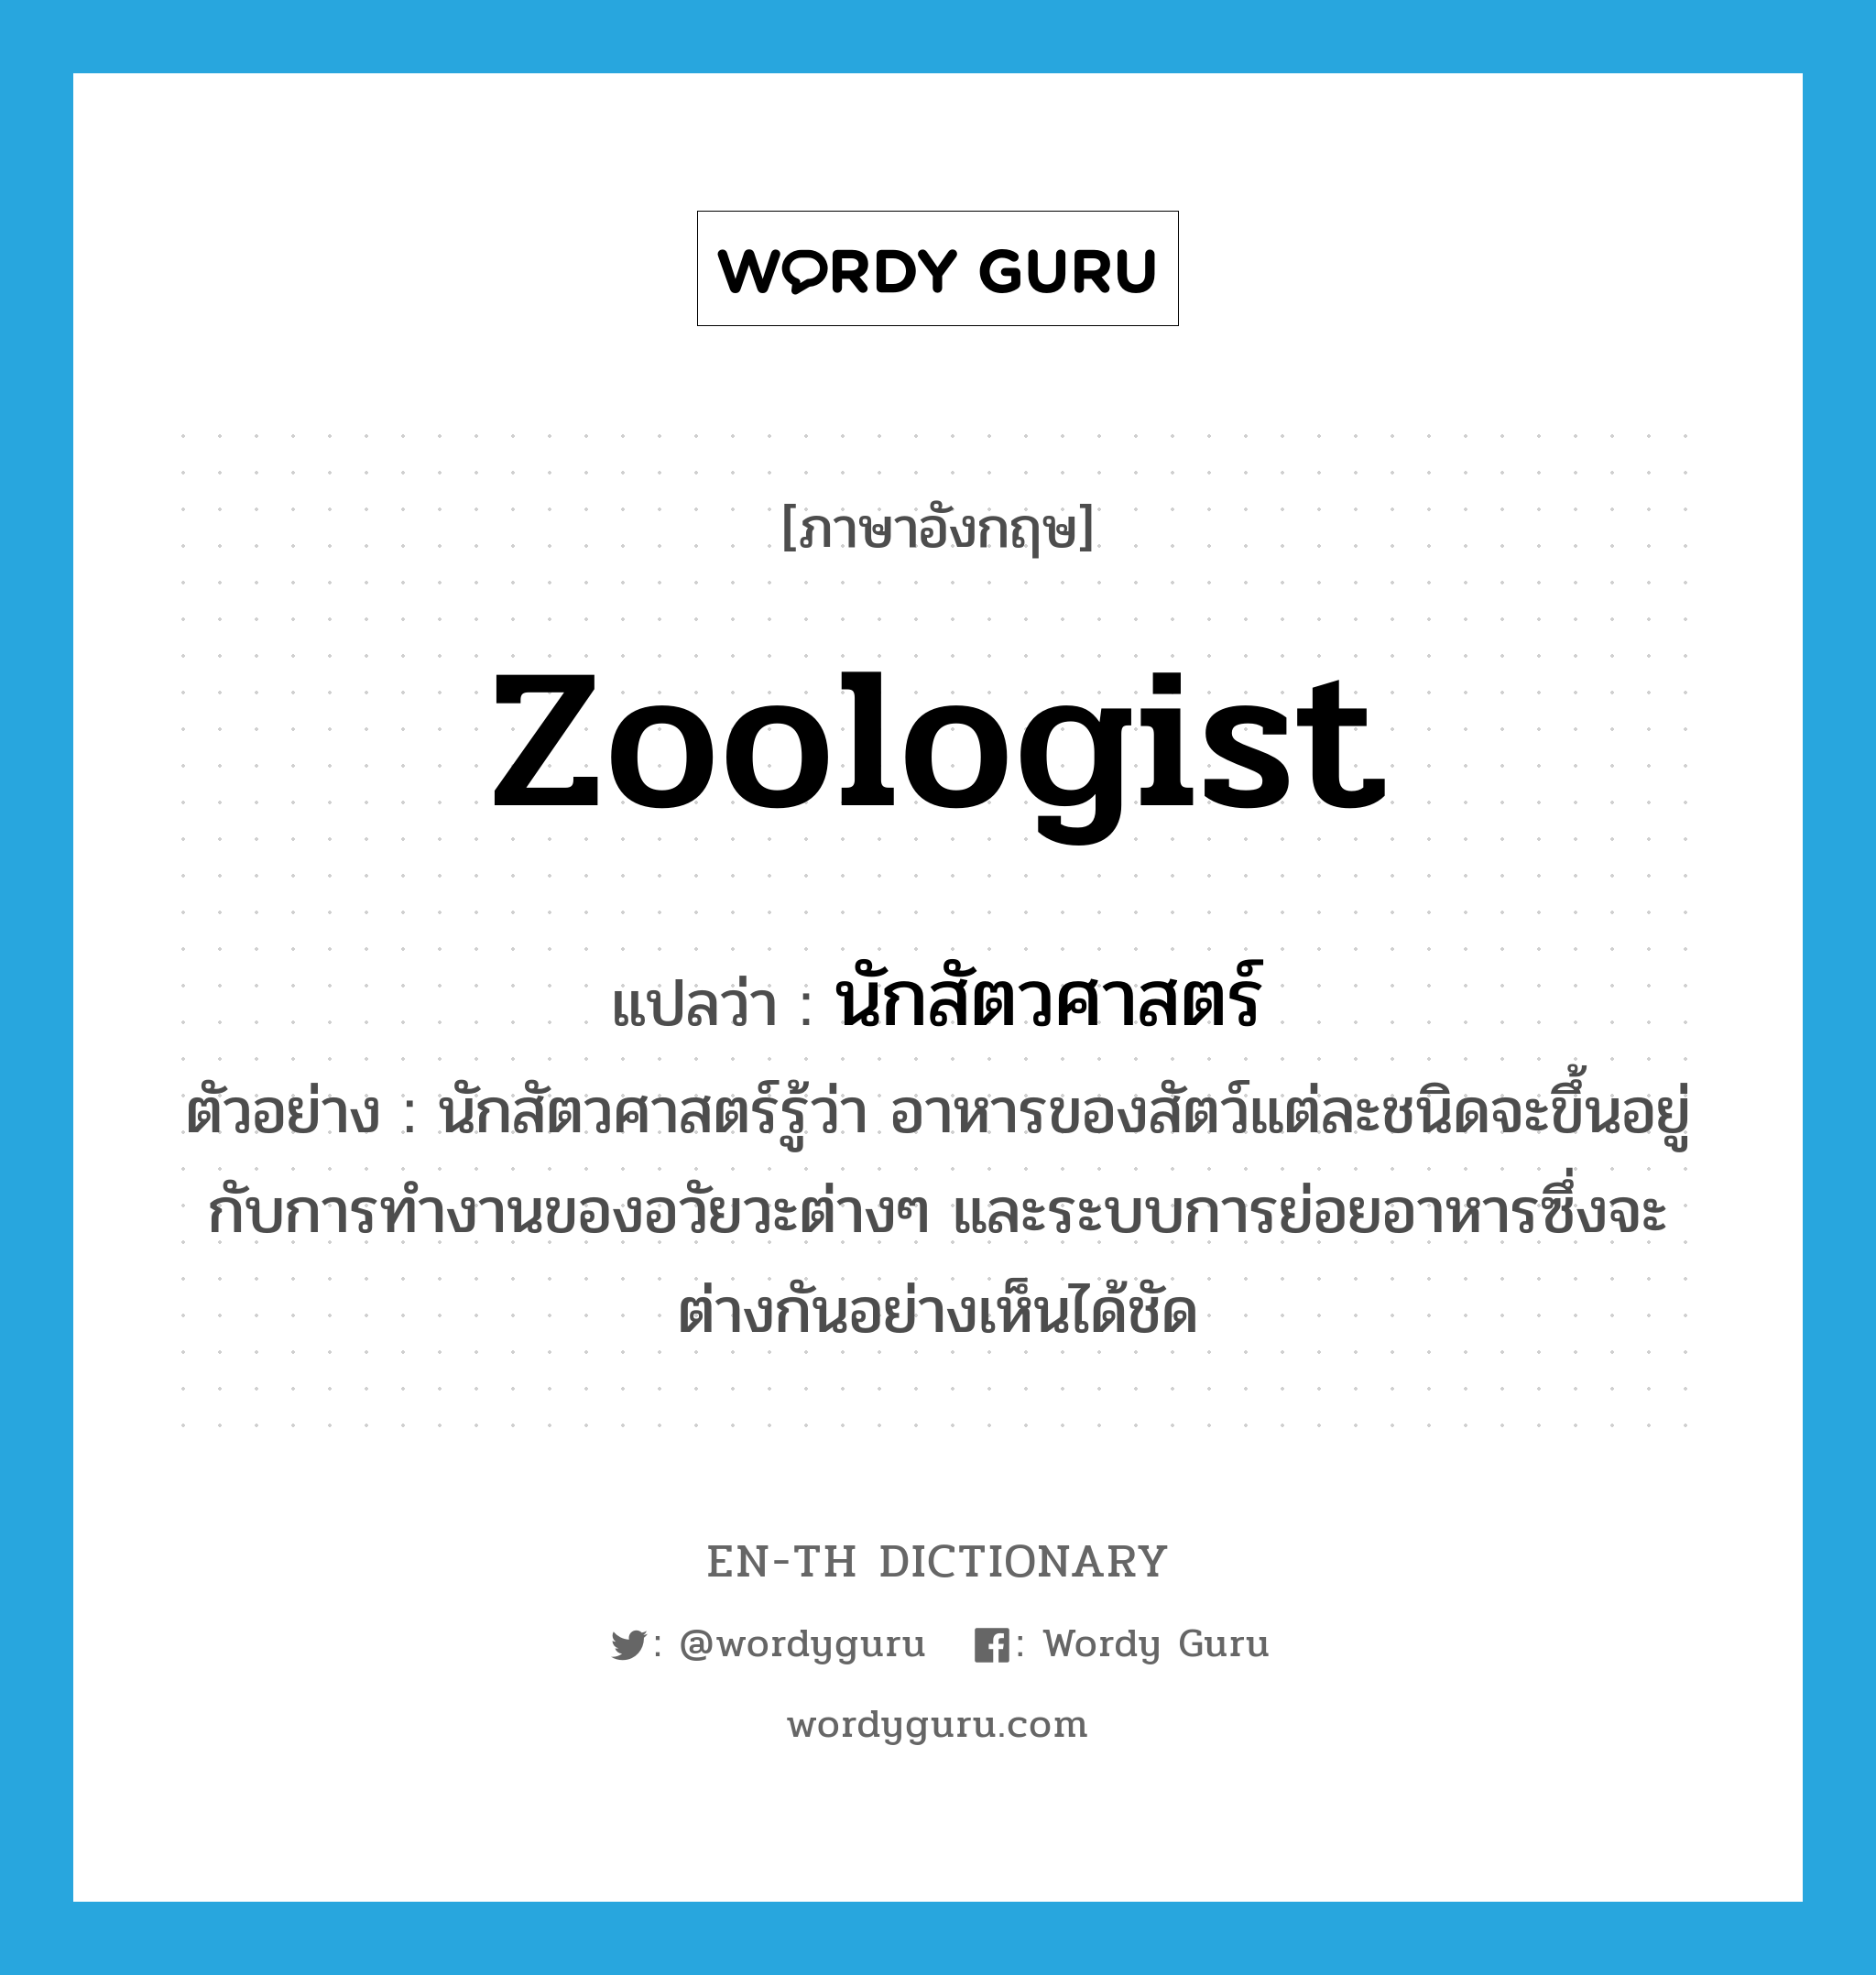 zoologist แปลว่า?, คำศัพท์ภาษาอังกฤษ zoologist แปลว่า นักสัตวศาสตร์ ประเภท N ตัวอย่าง นักสัตวศาสตร์รู้ว่า อาหารของสัตว์แต่ละชนิดจะขึ้นอยู่กับการทำงานของอวัยวะต่างๆ และระบบการย่อยอาหารซึ่งจะต่างกันอย่างเห็นได้ชัด หมวด N